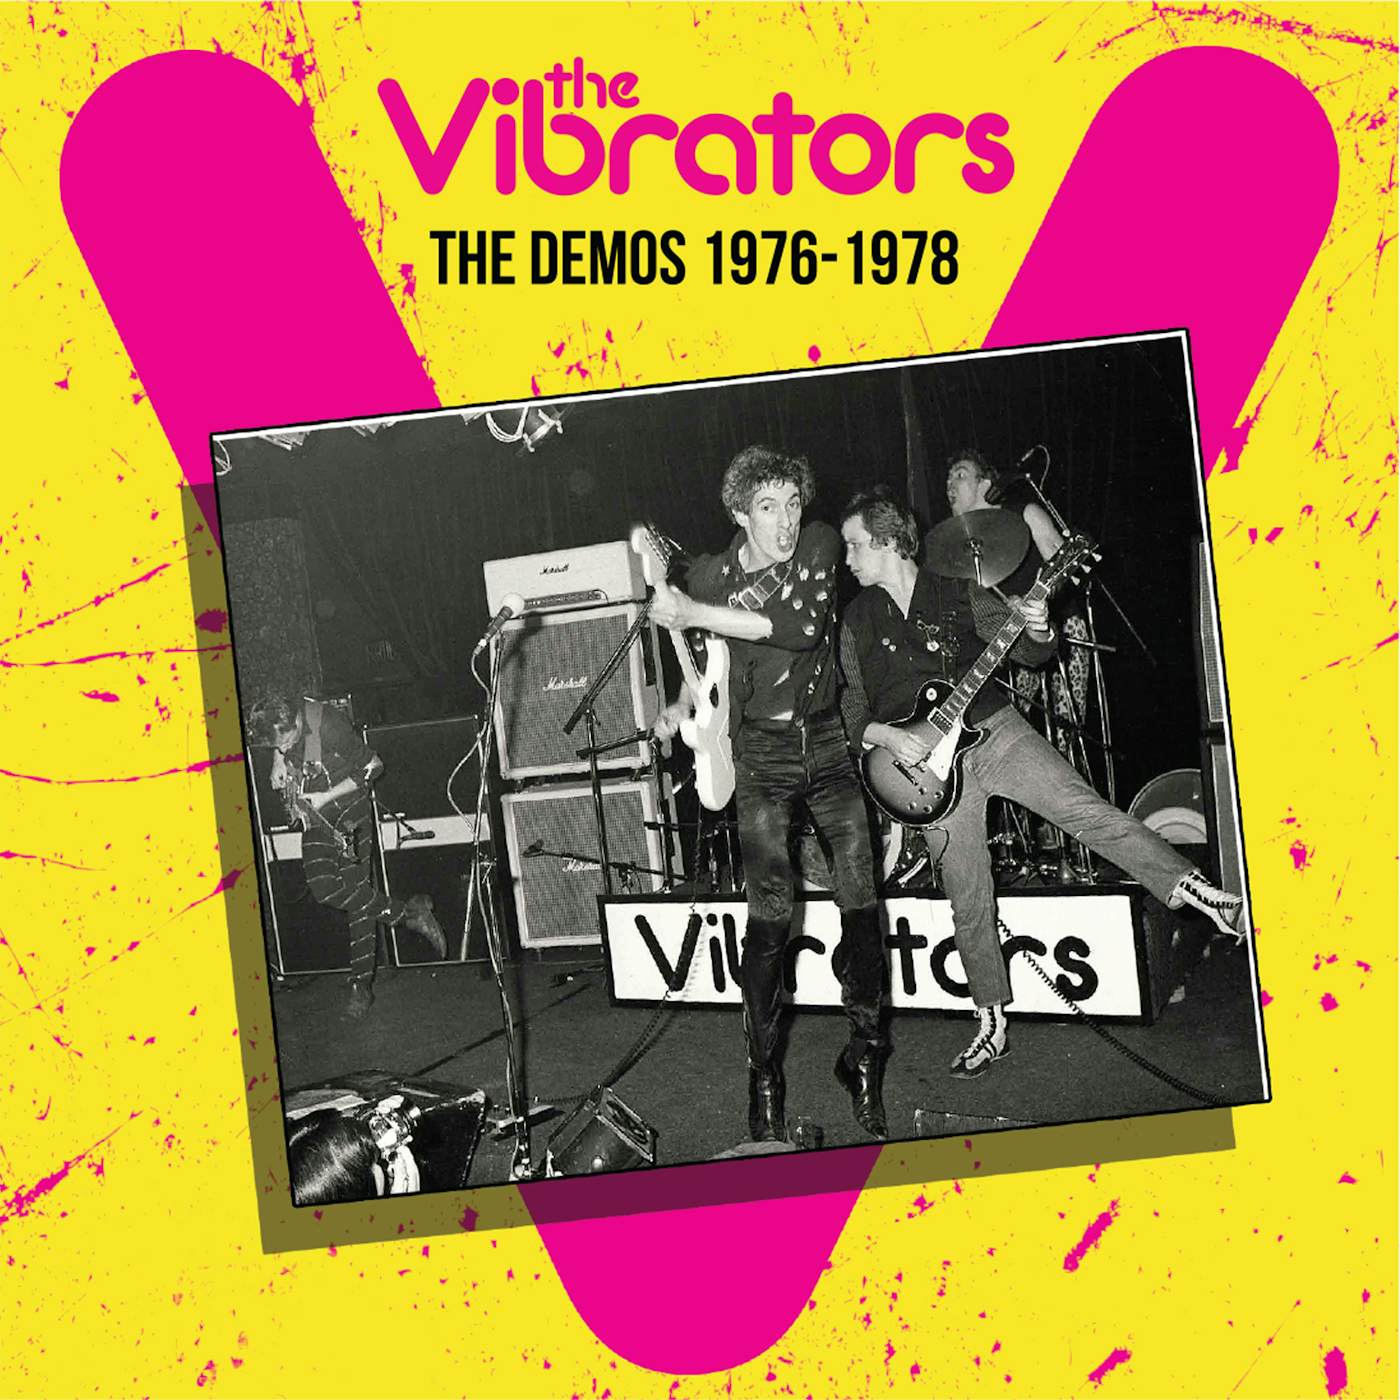 The Vibrators DEMOS 1976-1978 CD